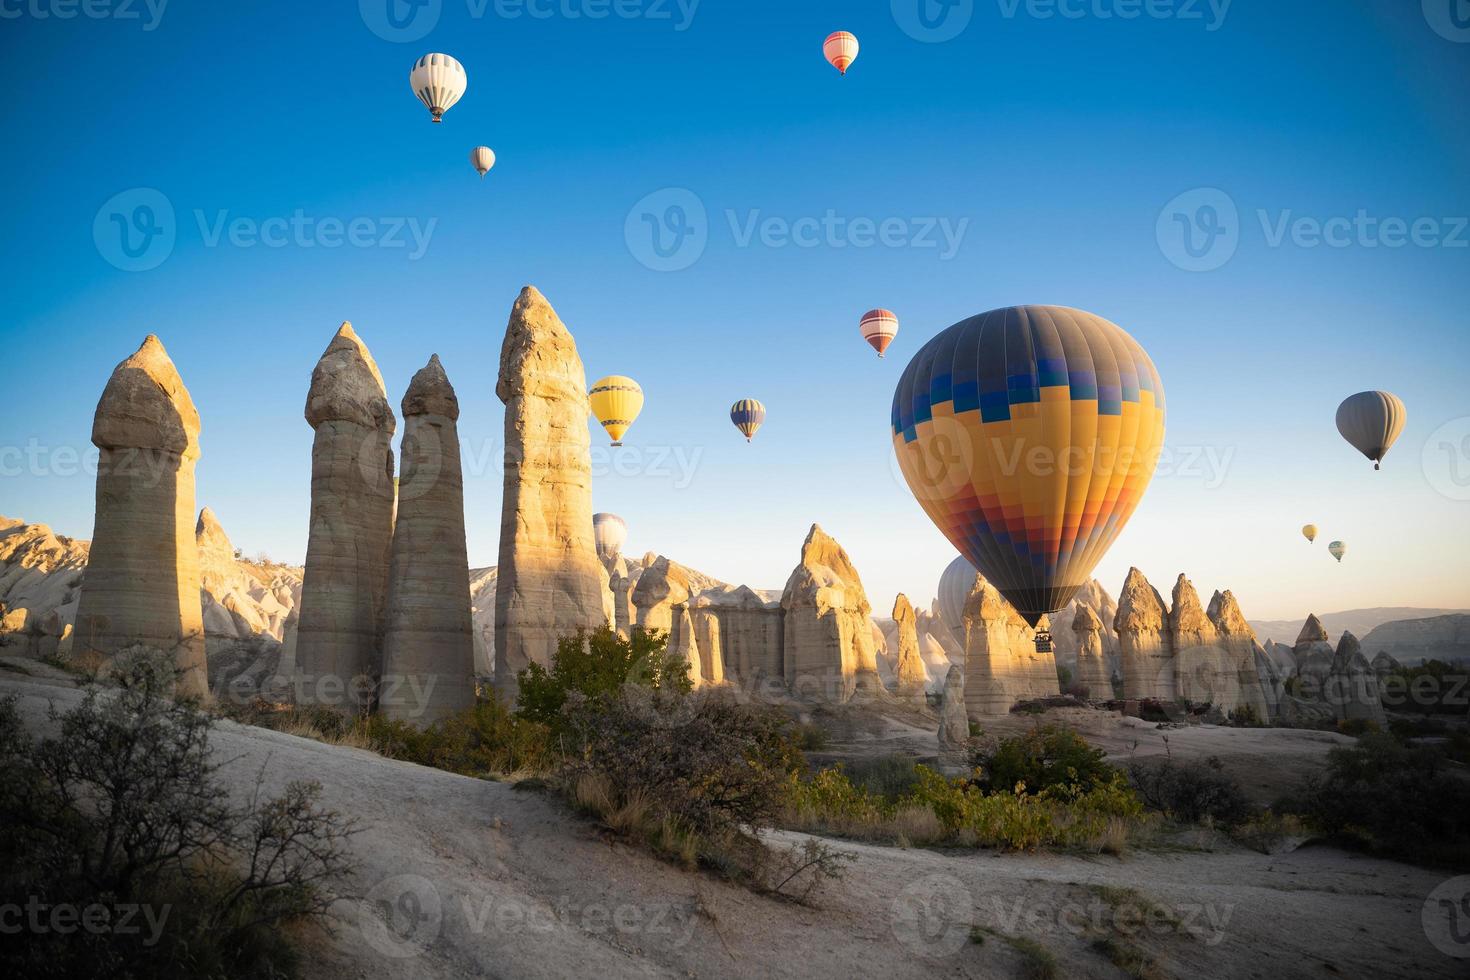 schöne landschaft luftballonsflug in den bergen von kappadokien im liebestal foto